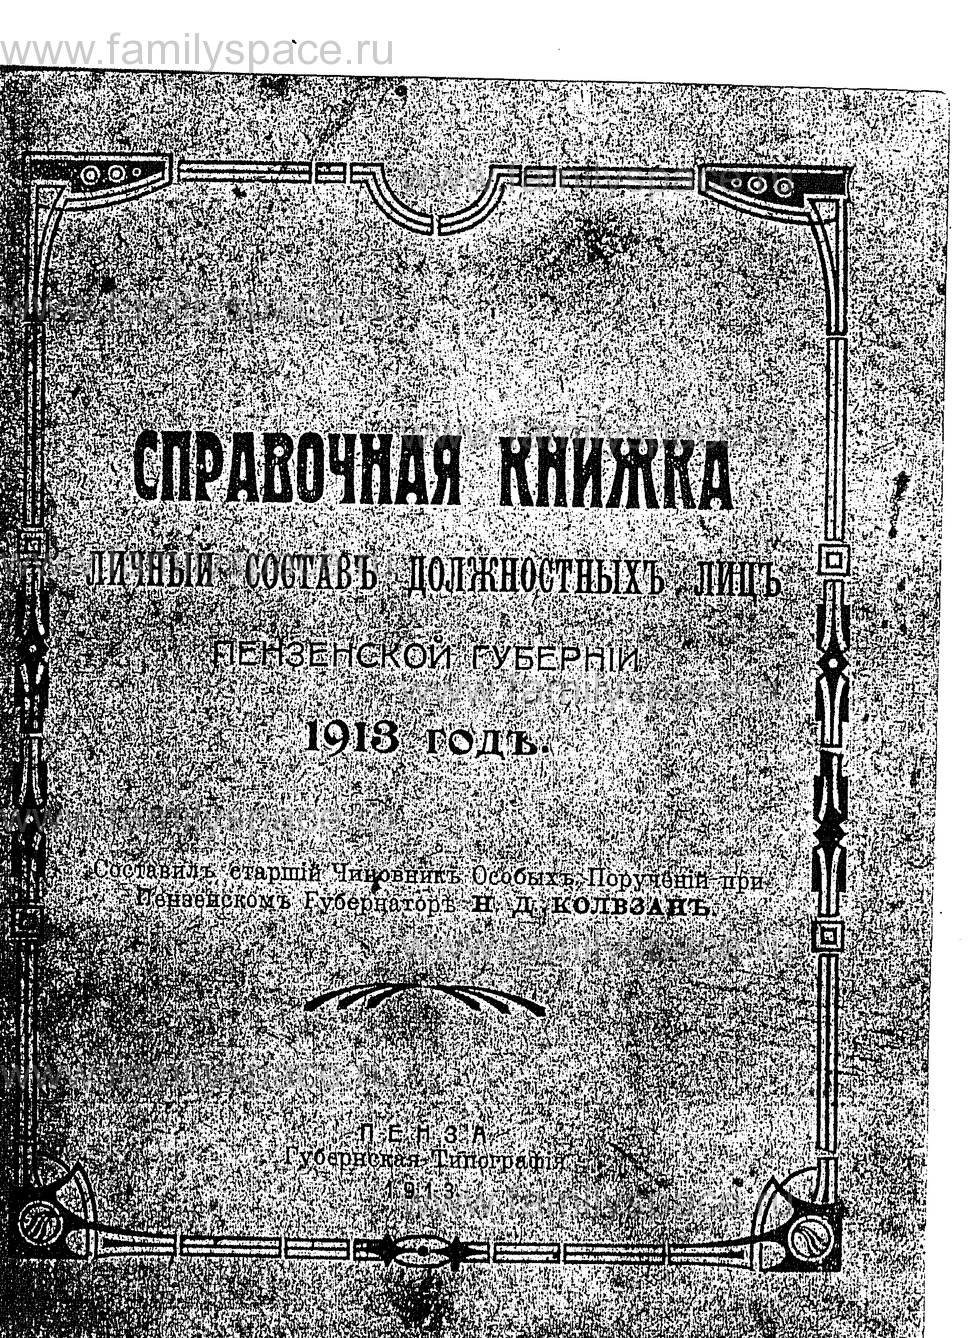 Поиск по фамилии - Справочная книжка Пензенской губернии на 1913 г, страница 1